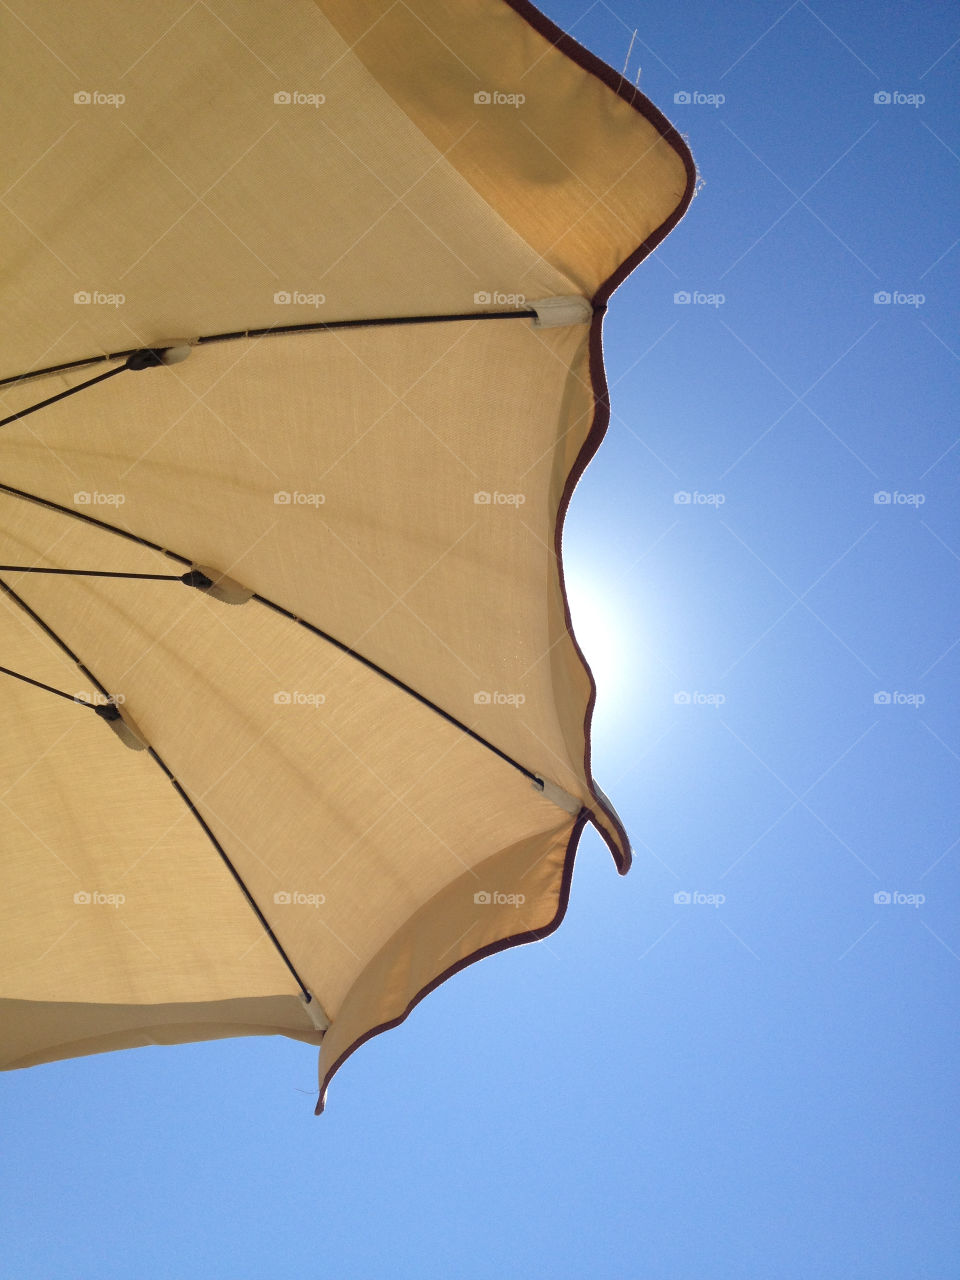 summer sun sea umbrella by paoletta75